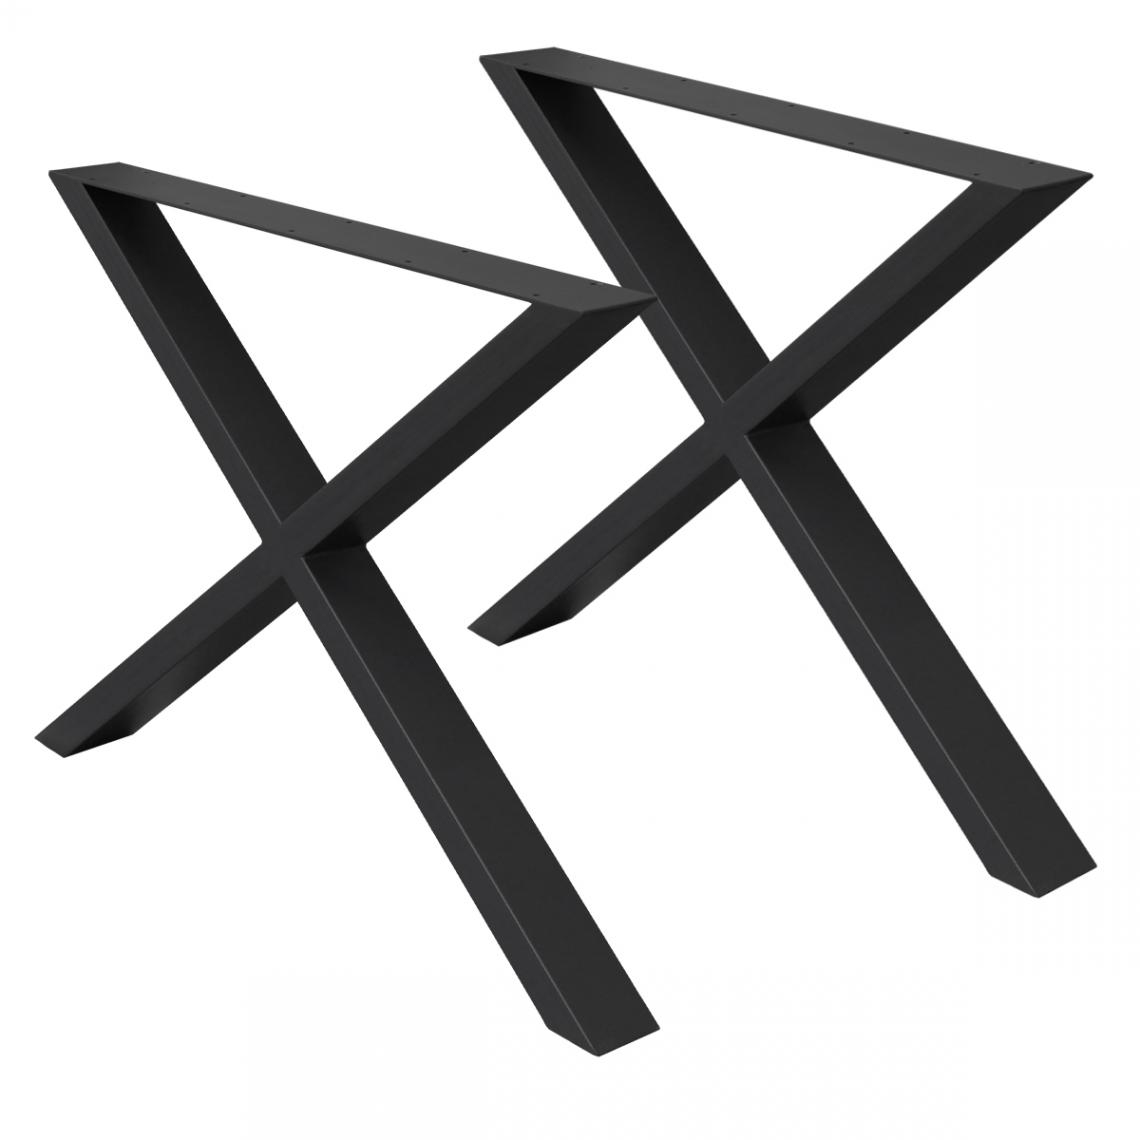 Ecd Germany - Set 2 pieds de table pour bureau 60x70cm forme X en acier noir design industriel - Pieds & roulettes pour meuble